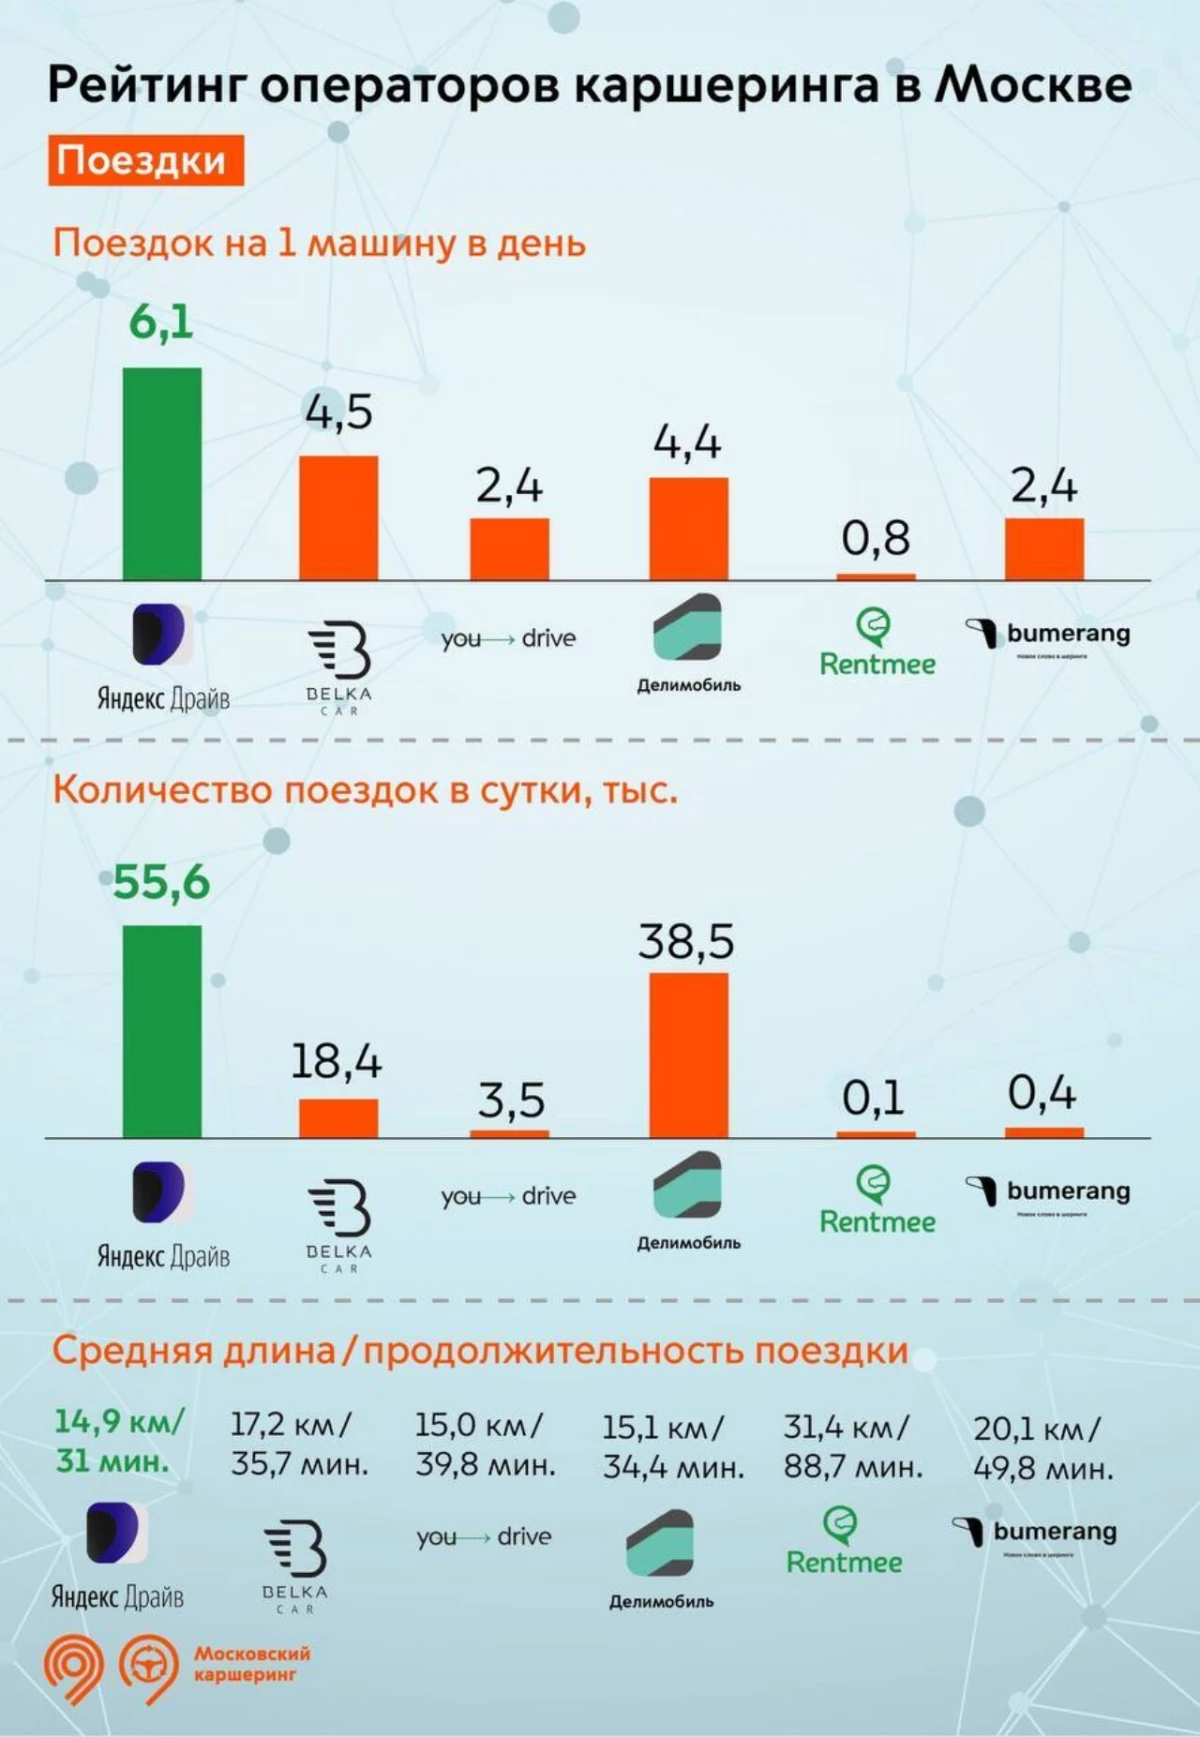 تعتبر موسكو مقارنة بخدمات التحول - حسب عدد السفر والمستخدمين تقود 